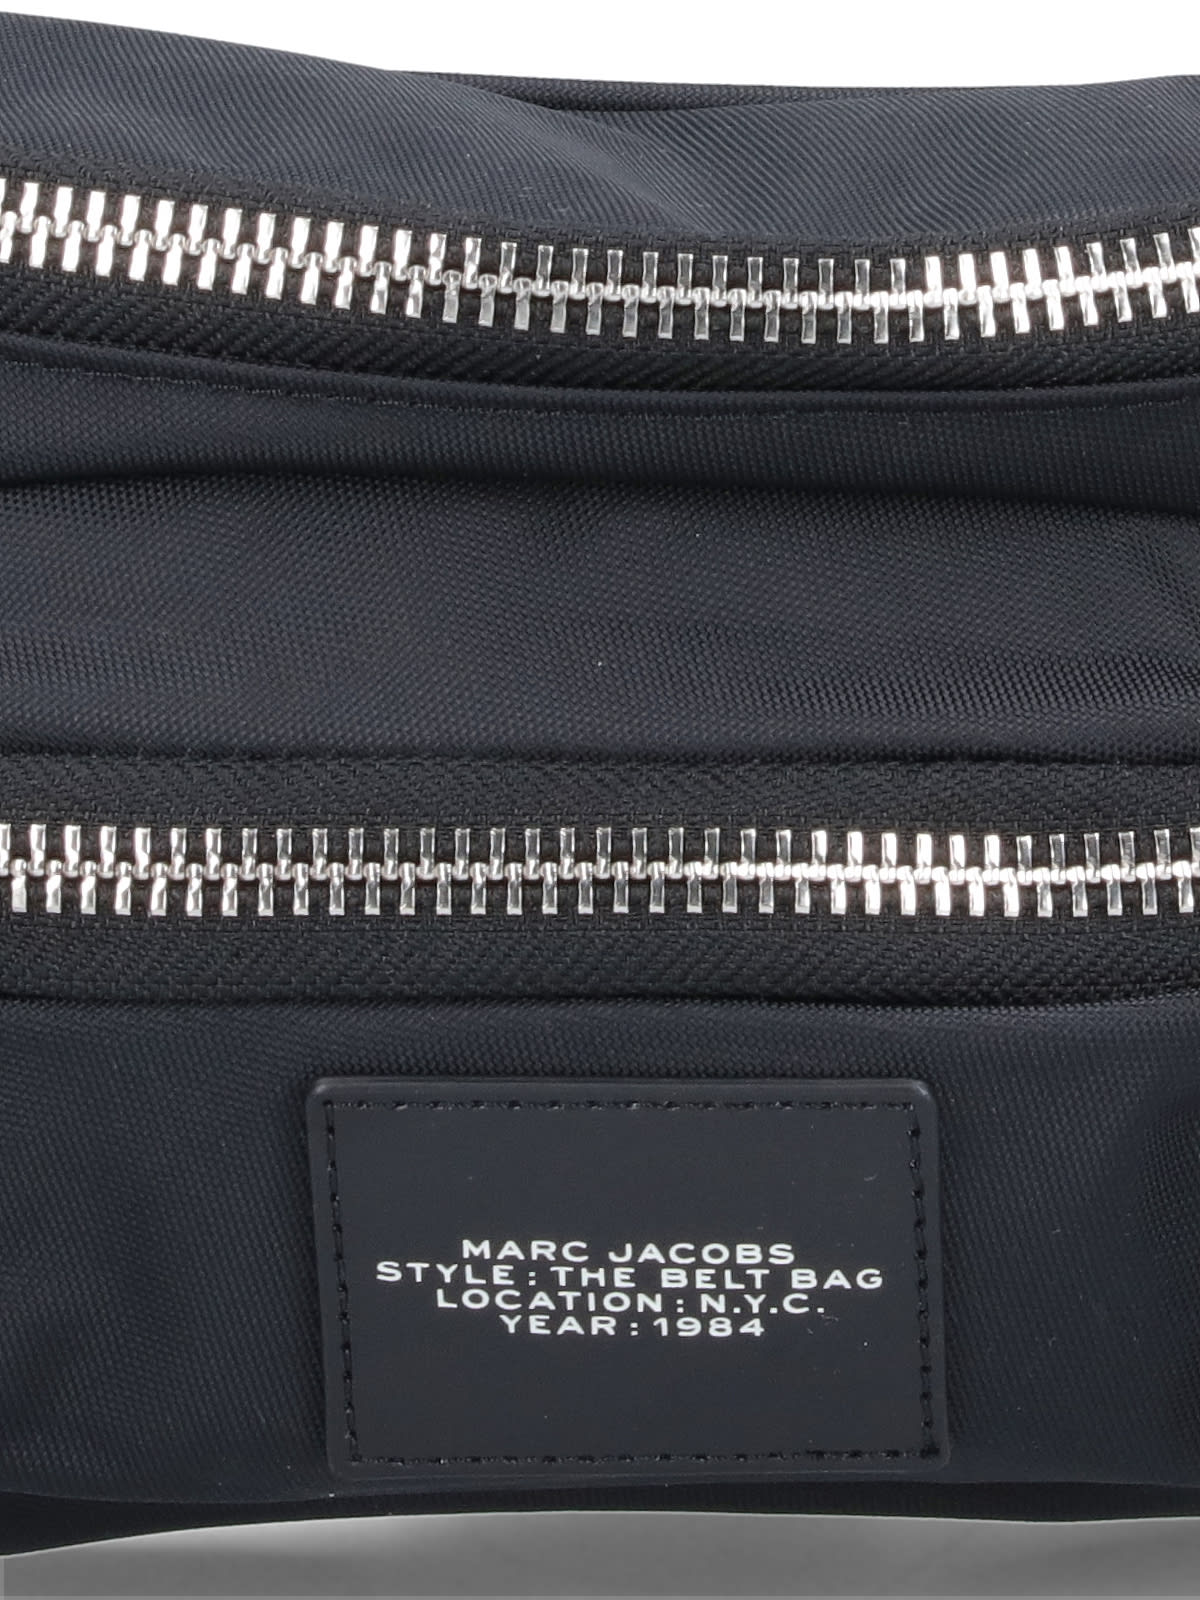 Shop Marc Jacobs Belt Bag The Biker In Black